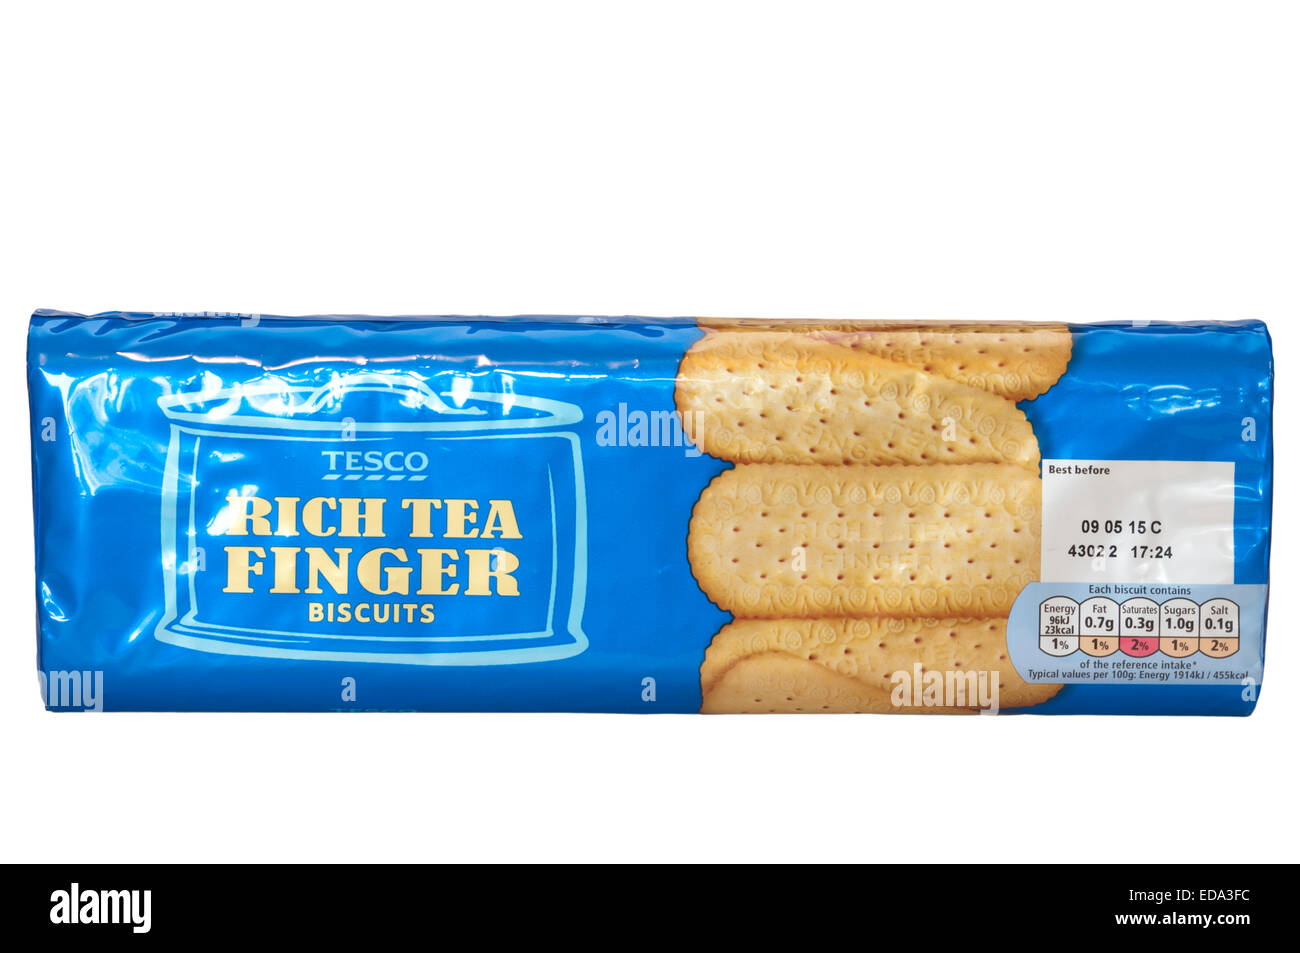 Pacchetto di Tesco a proprio marchio ricca di tè biscotti del dito Foto Stock